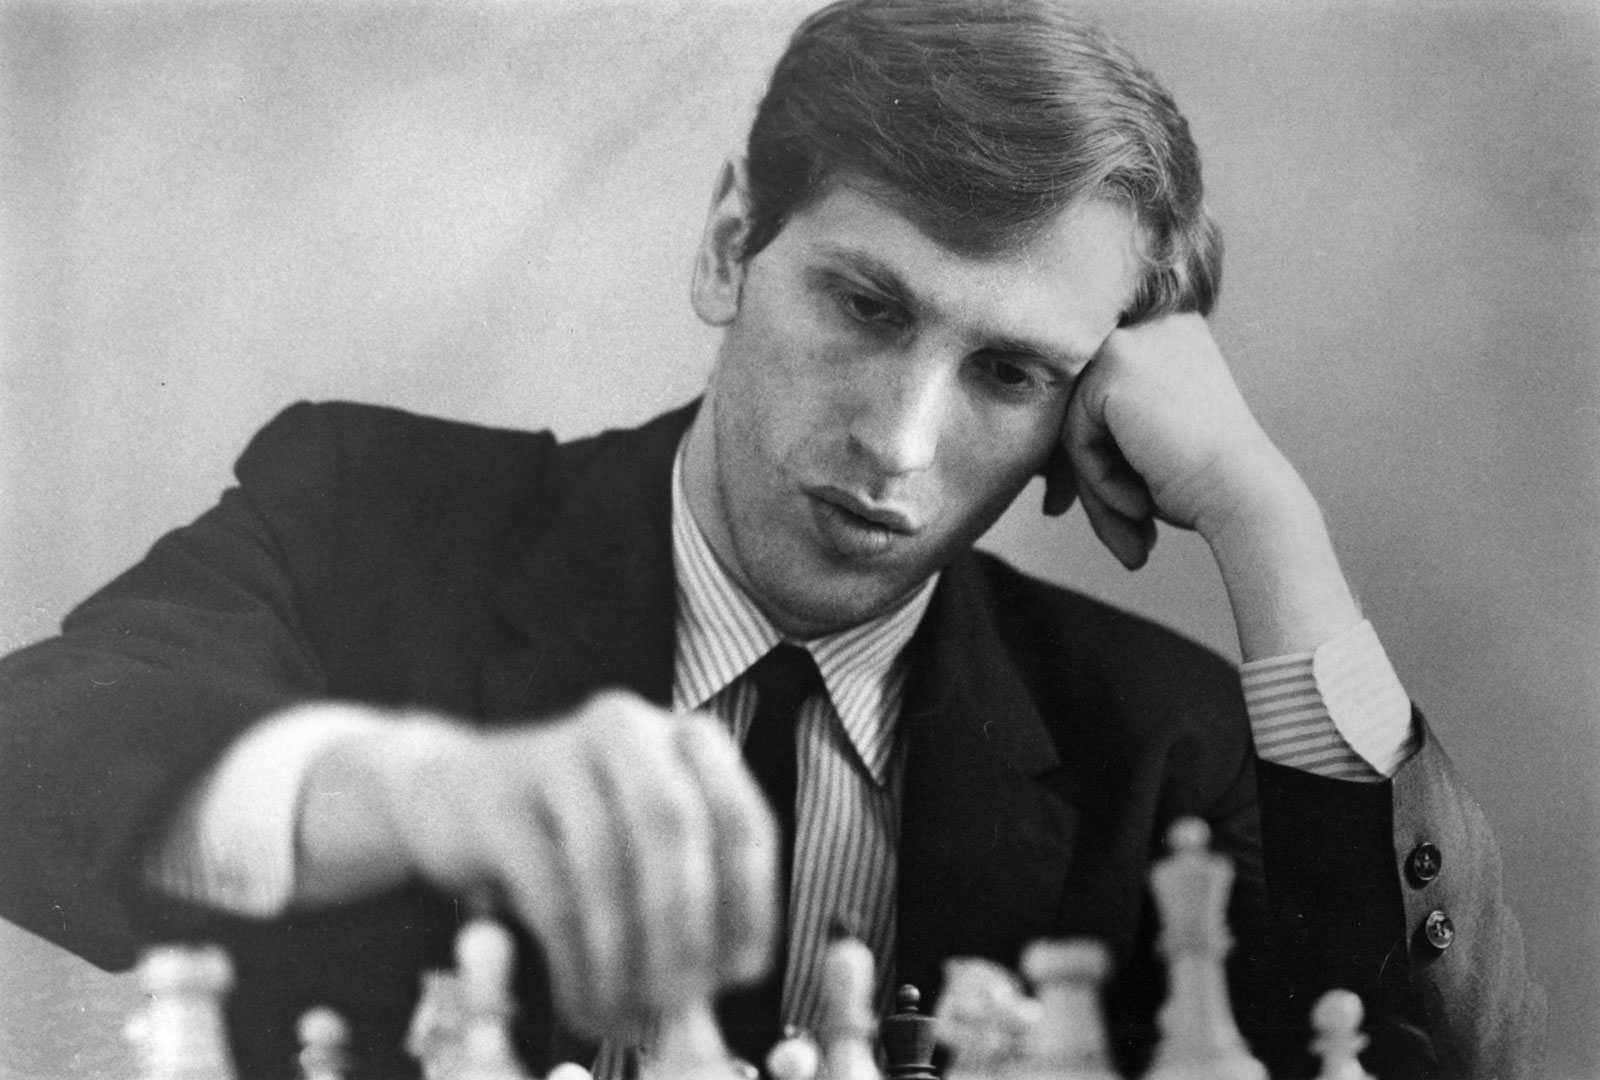 Bobby Fischer falleció hoy hace 10 años